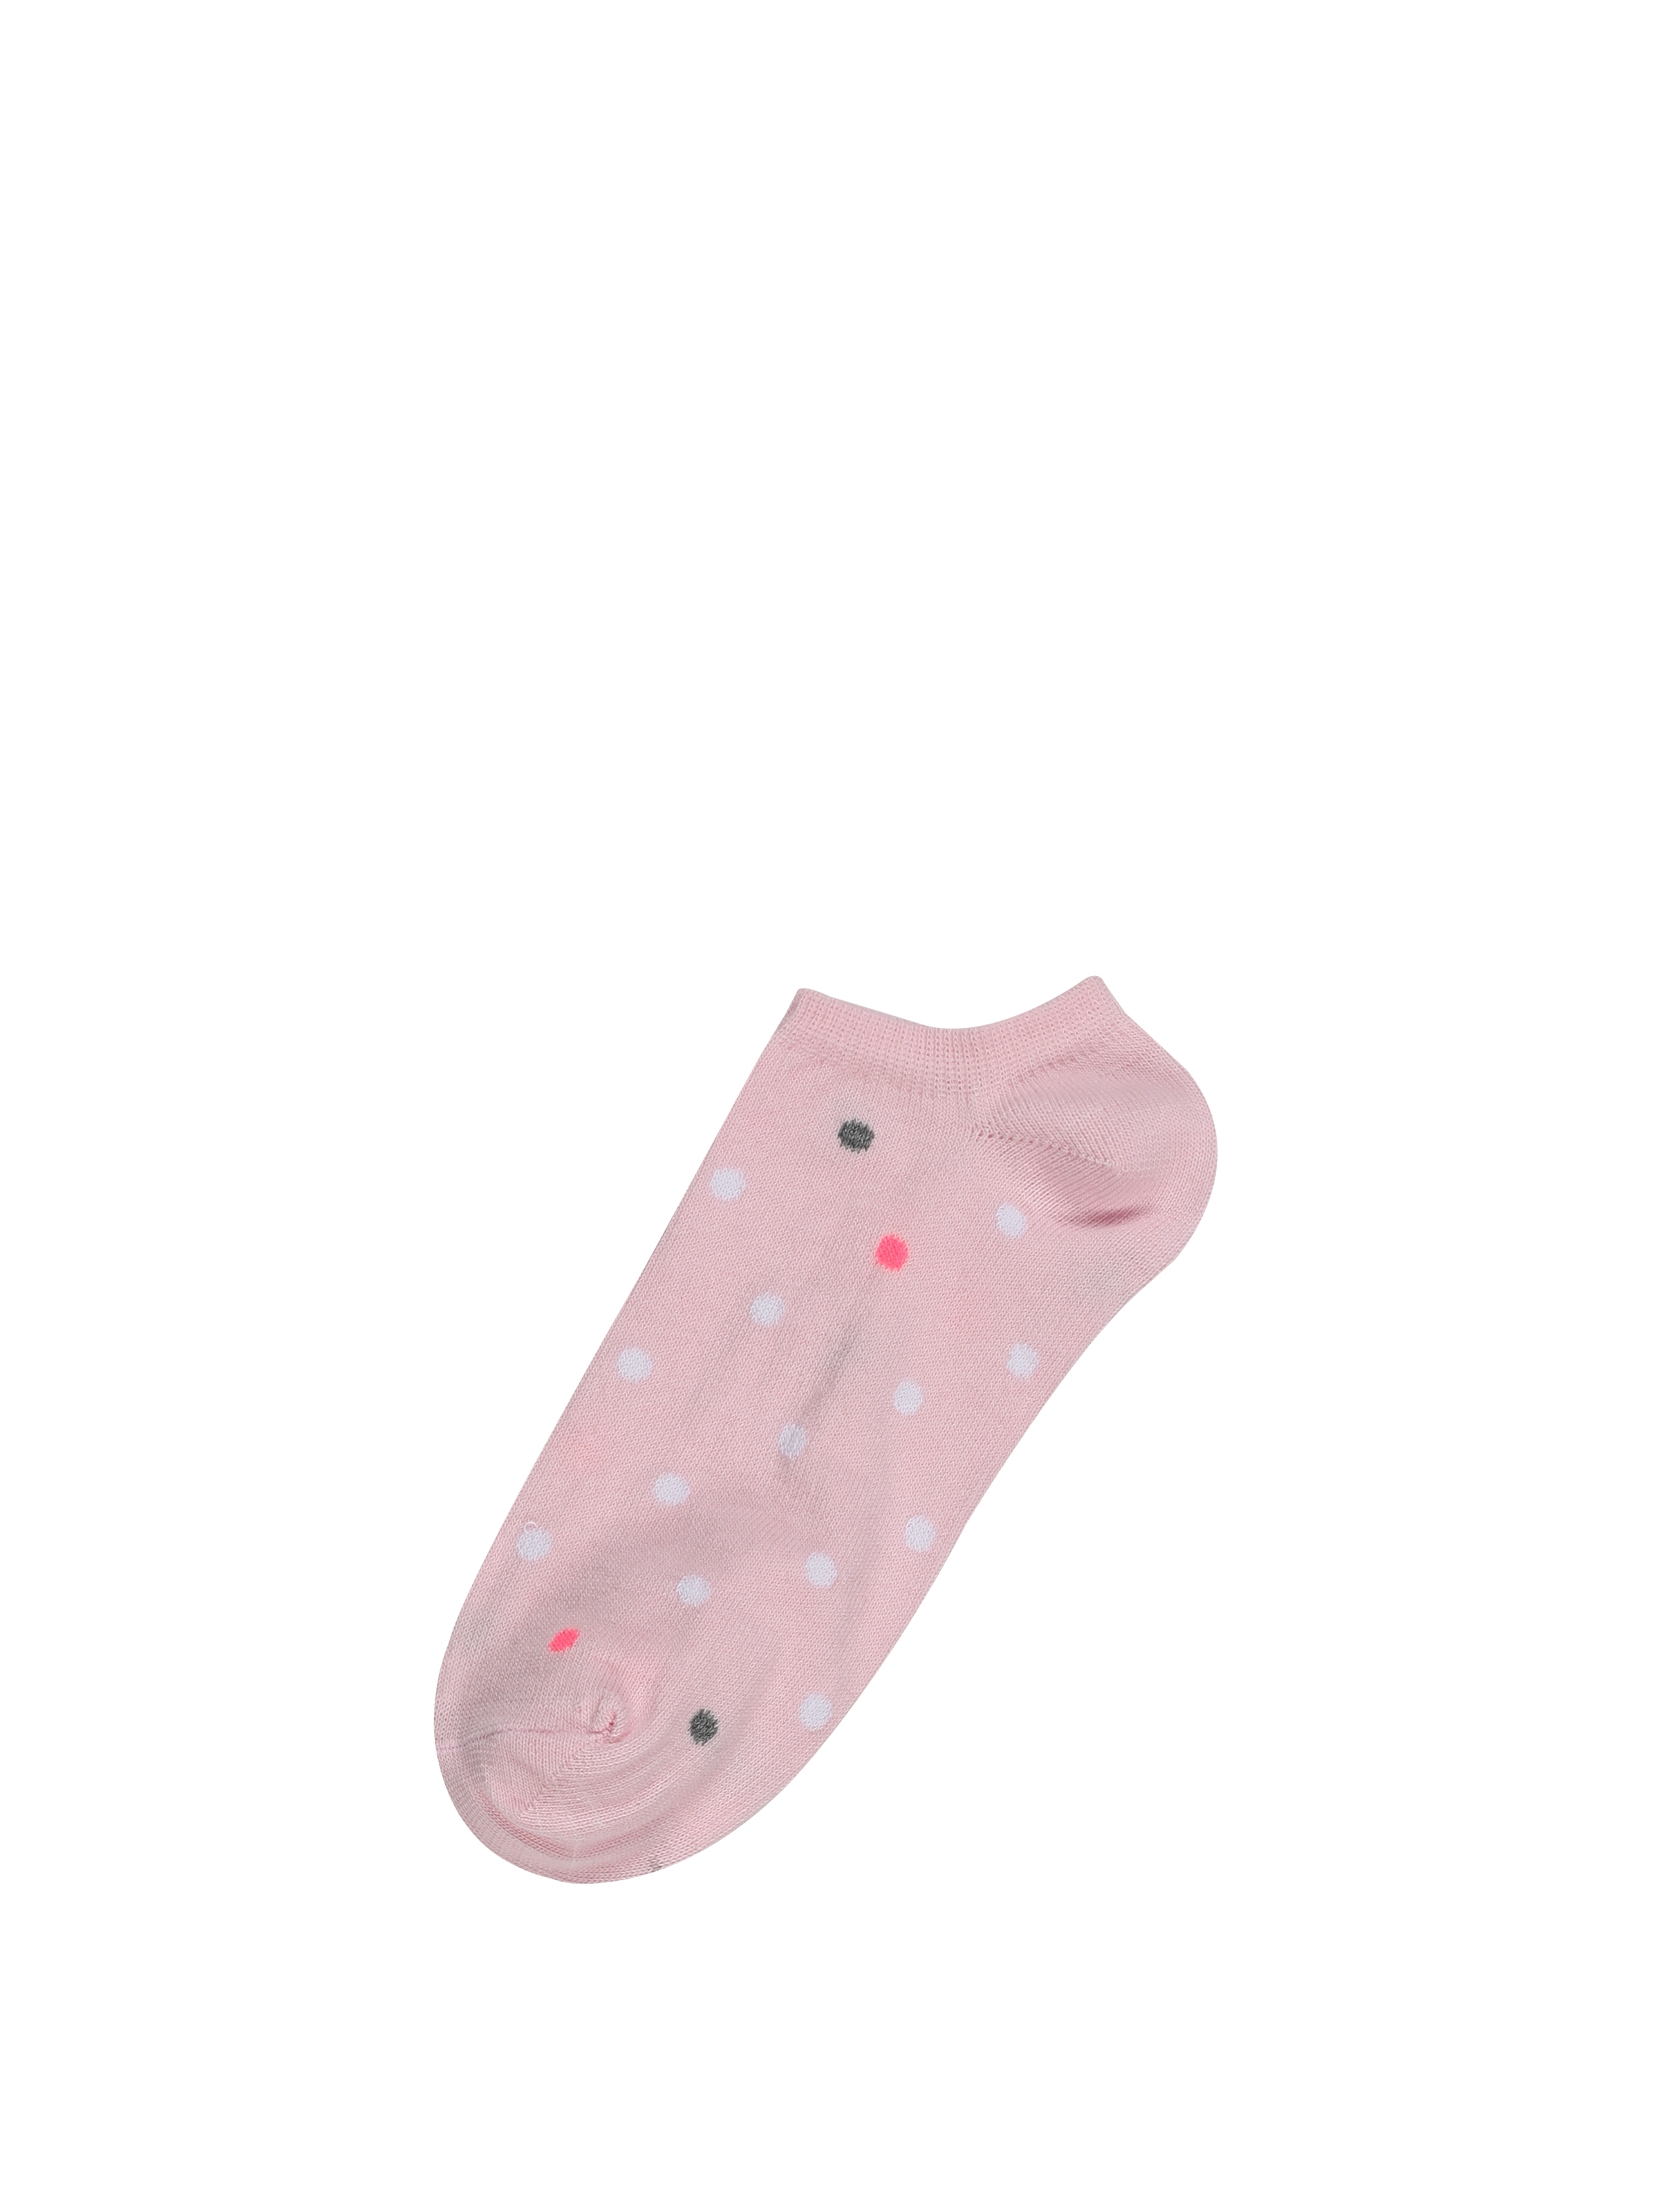 Pembe Kadın Çorap